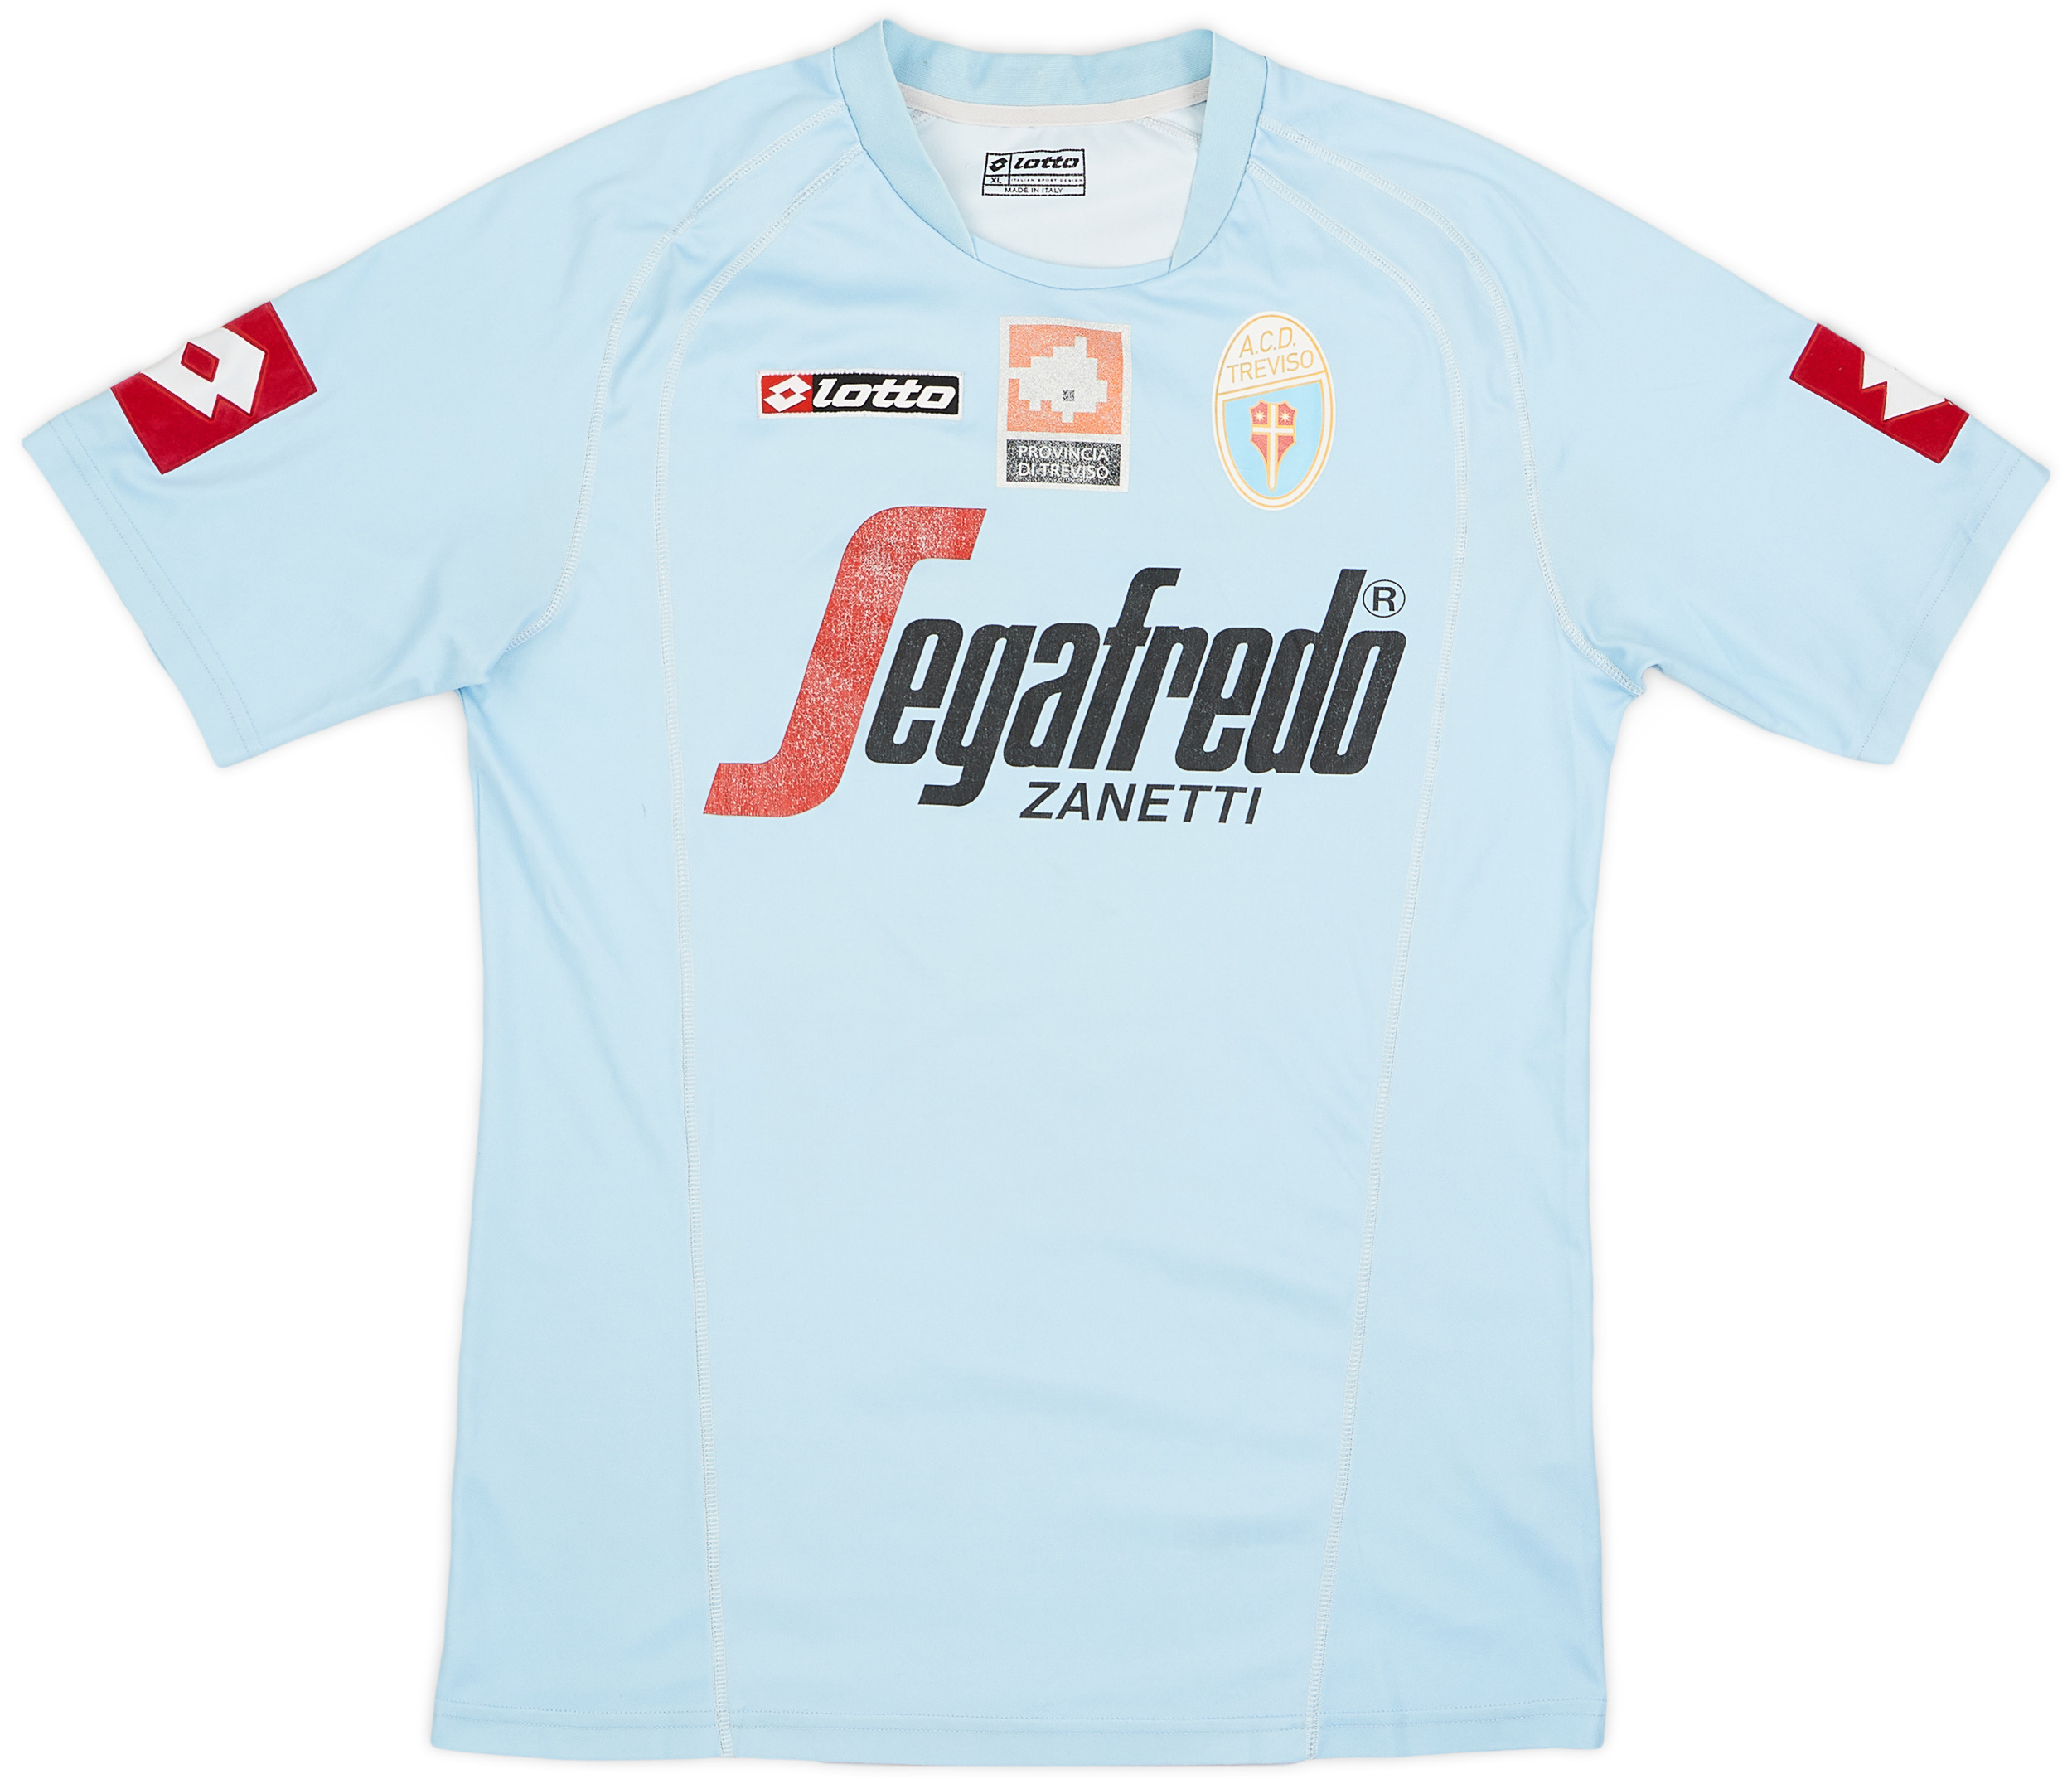 ACD Treviso 2013  home shirt (Original)